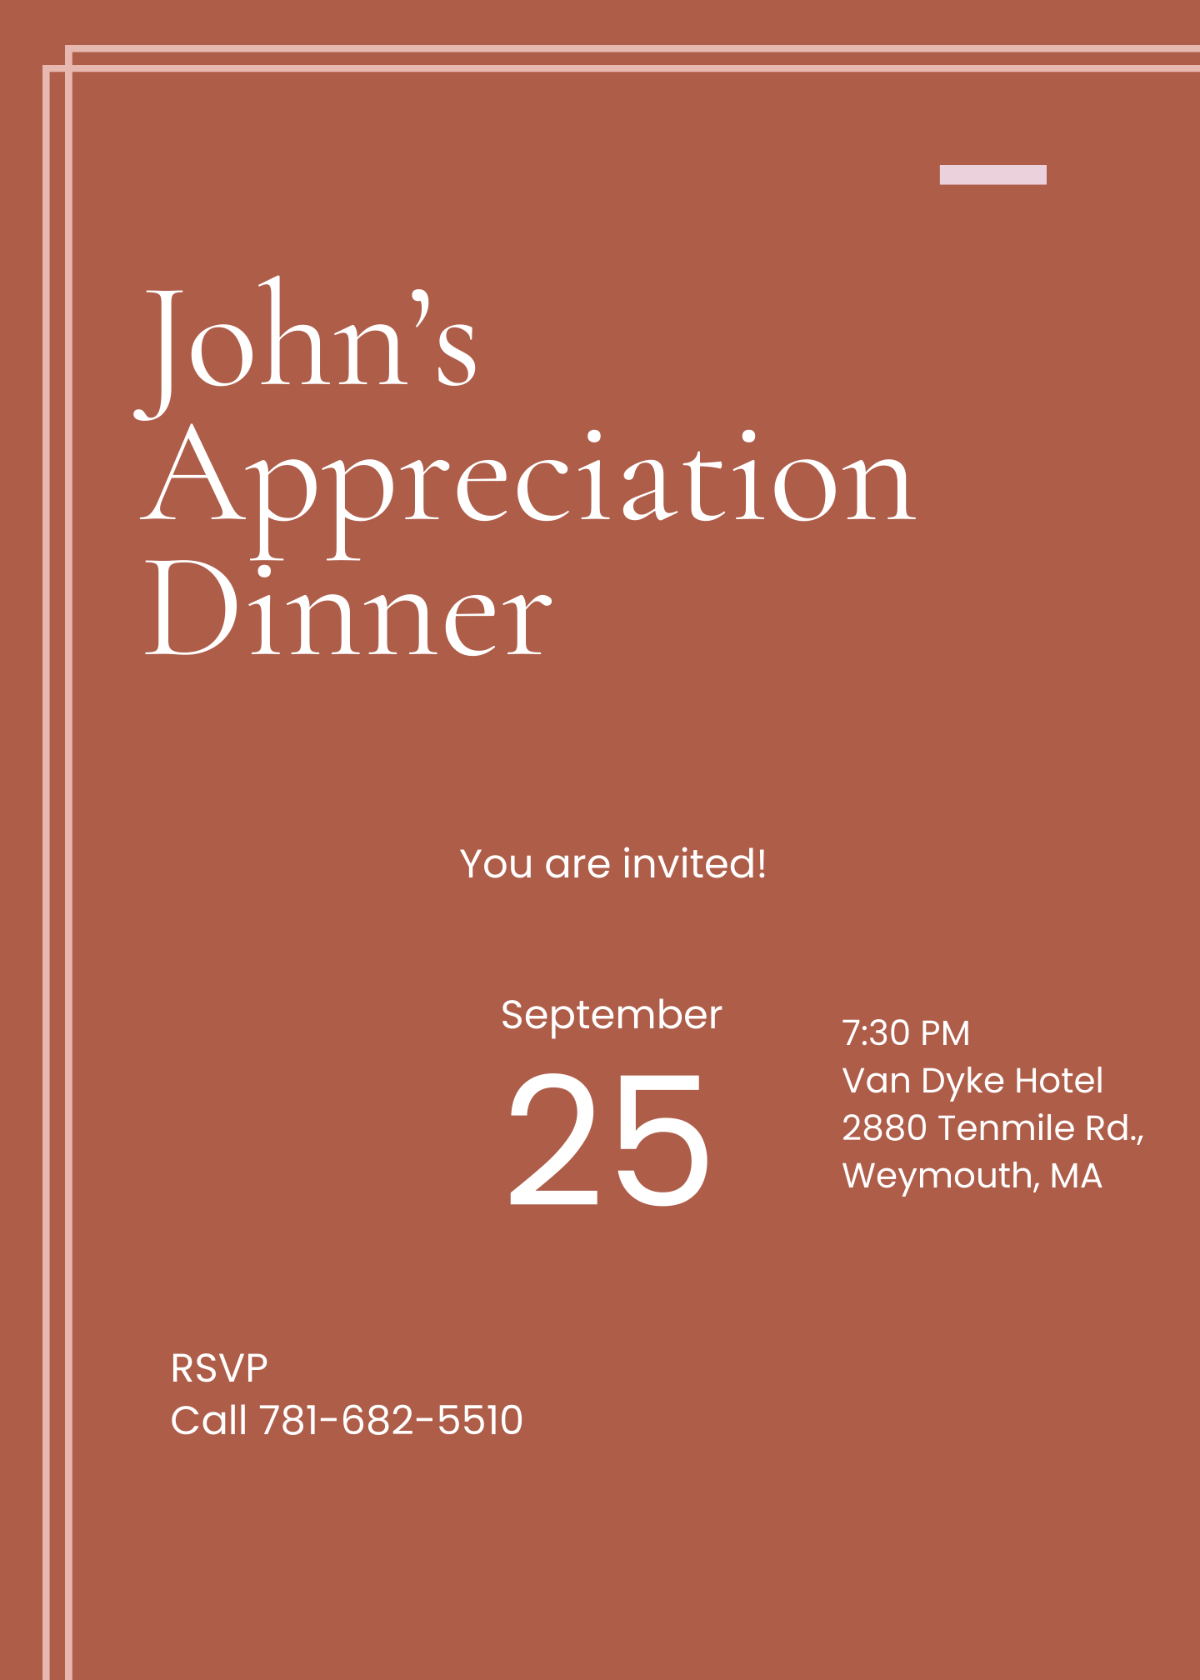 Modern Appreciation Dinner Invitation Template